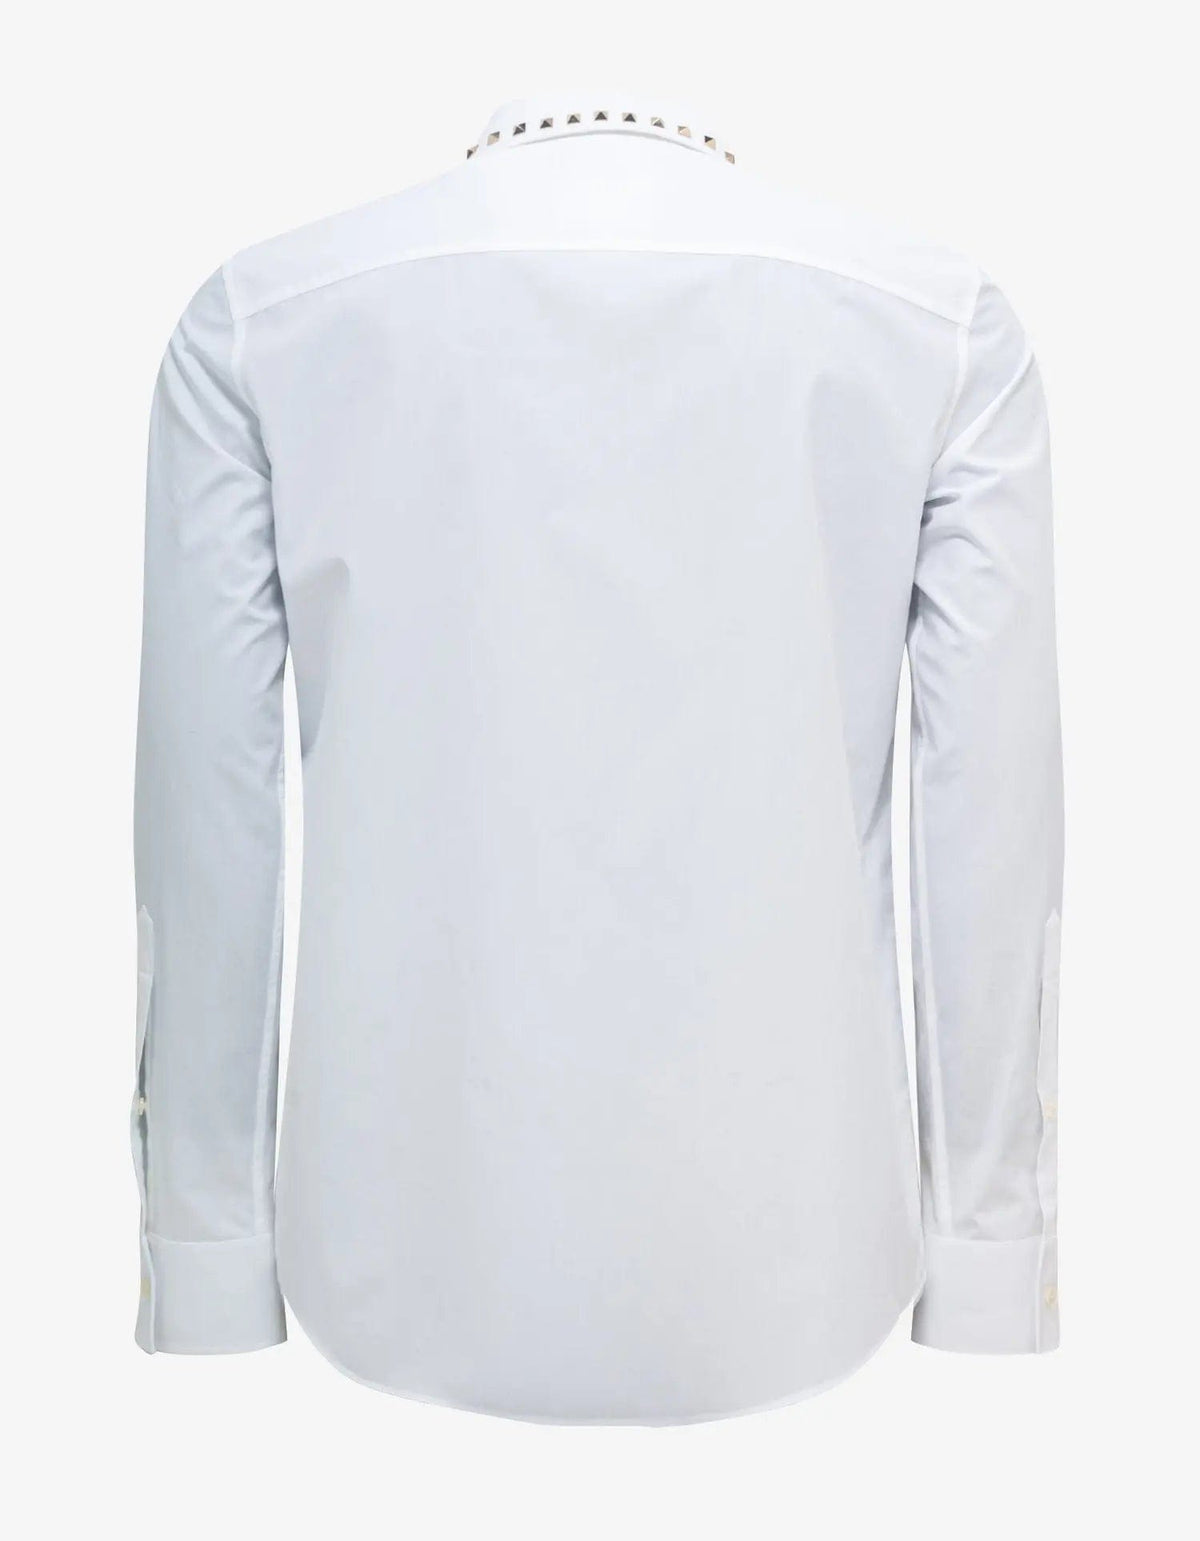 Valentino Garavani White Stud Shirt